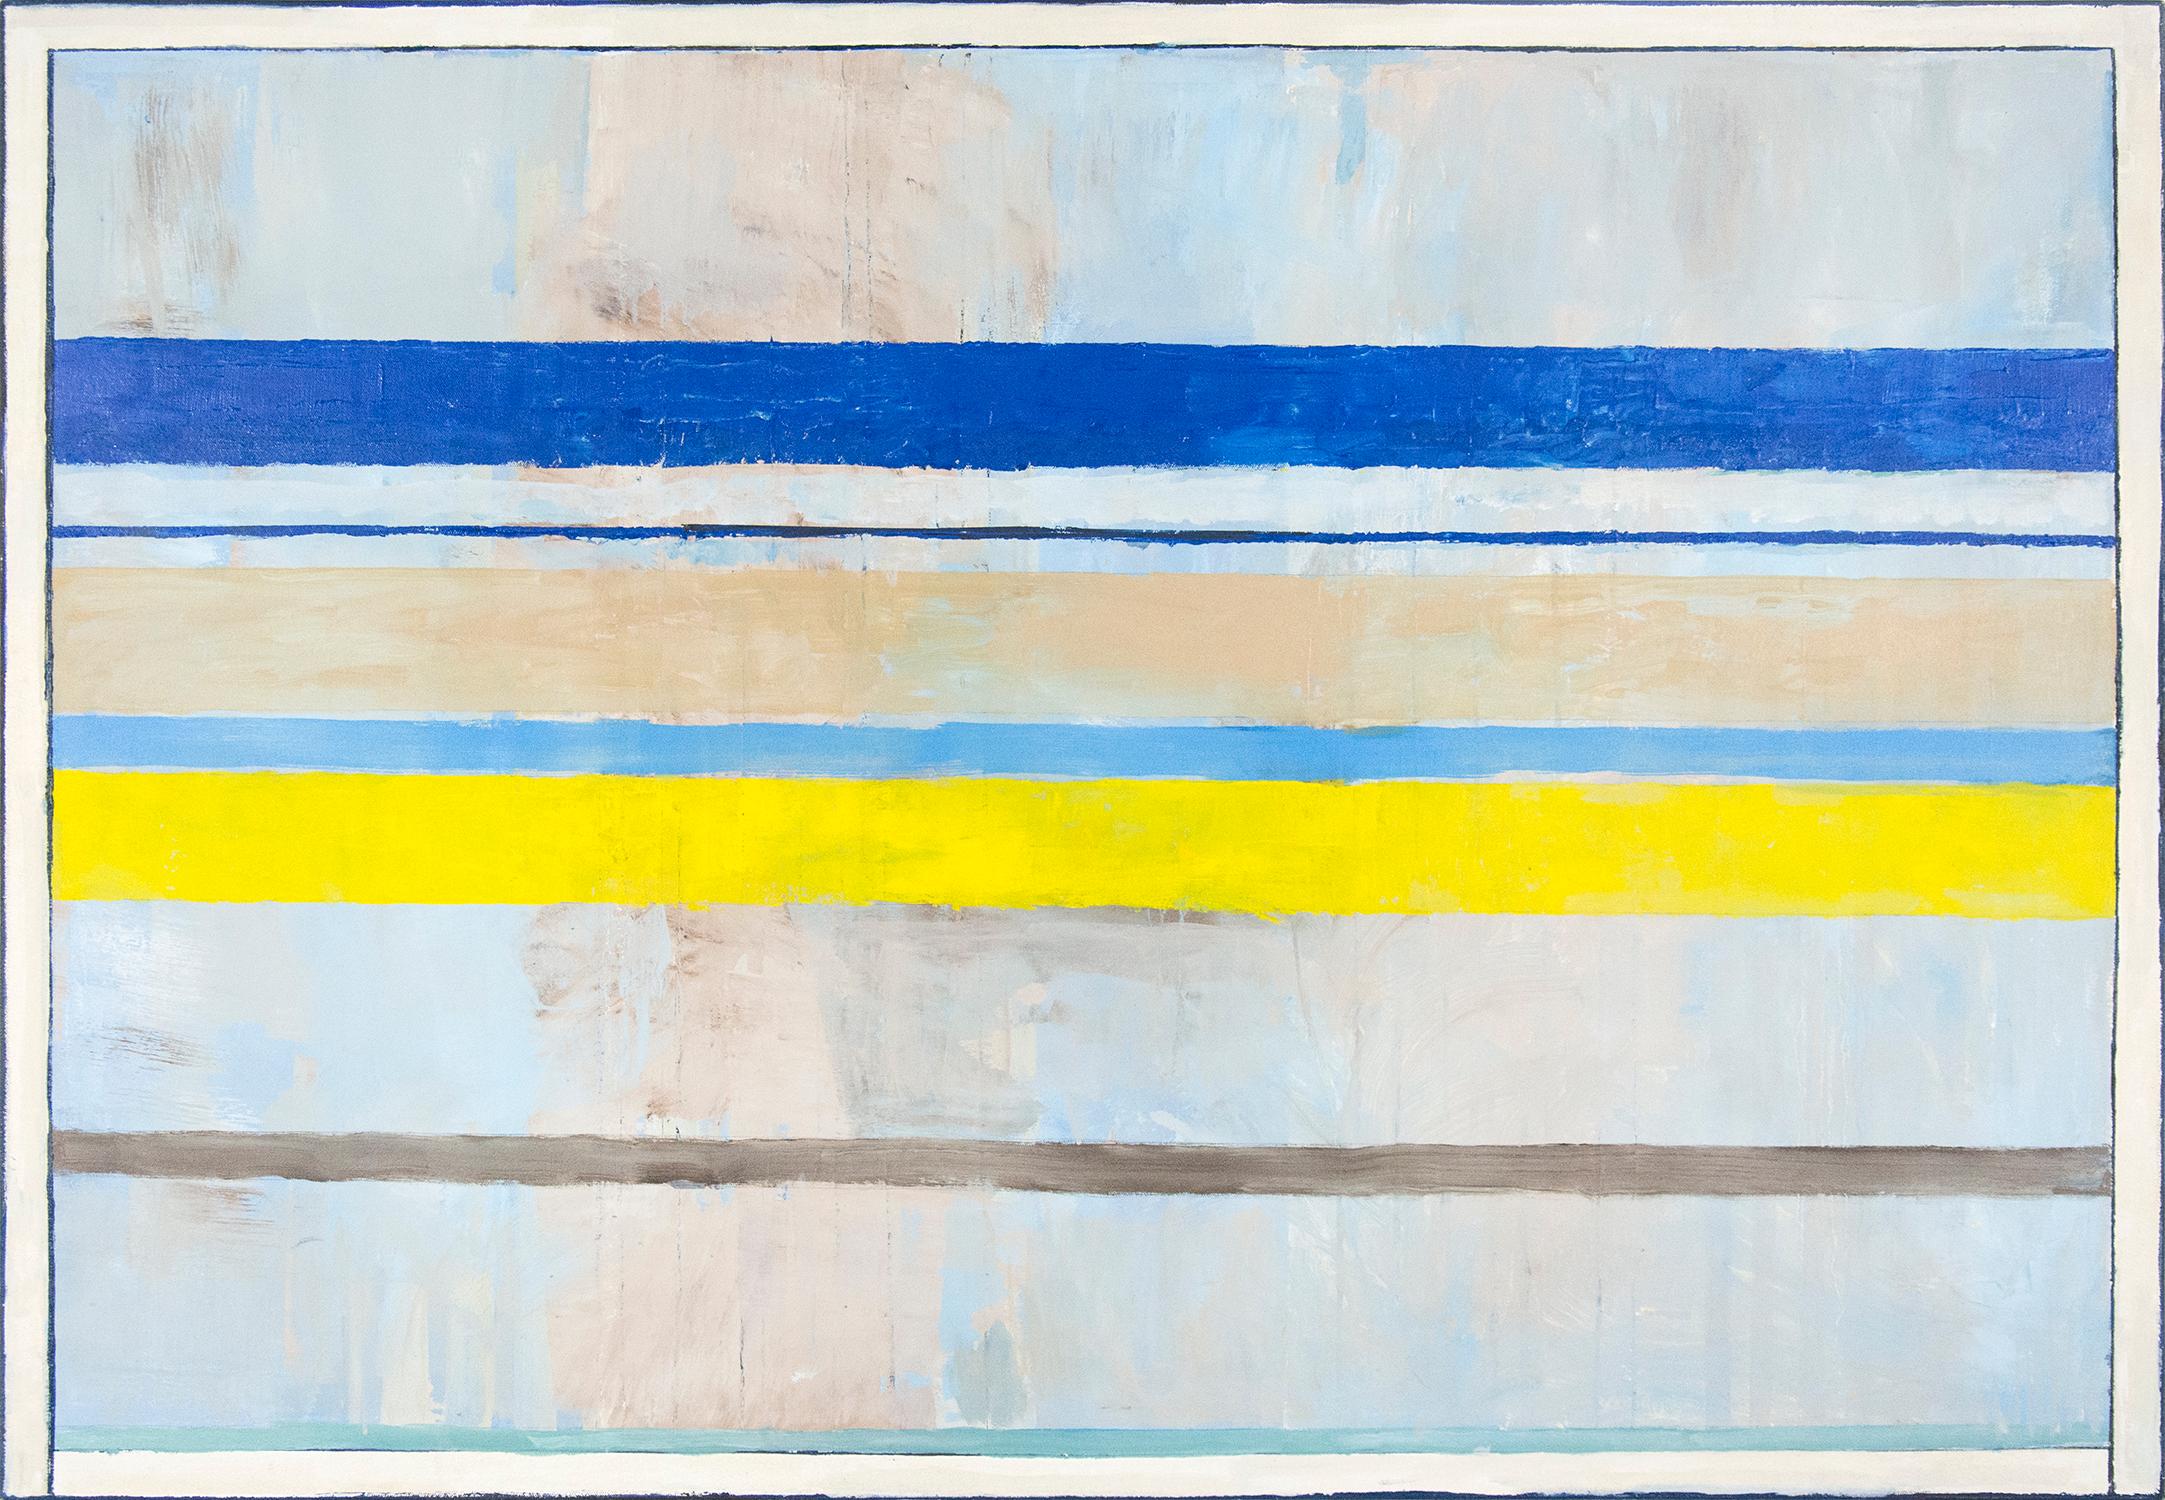 In diesem modernistischen Triptychon von David Sorensen verweisen malerische Bänder in leuchtendem Zitronen-, Aqua-, Weiß- und Grüngrün auf Strand, Sand und Himmel. 

Mit seinen malerisch-modernen Kompositionen wollte der berühmte kanadische Maler